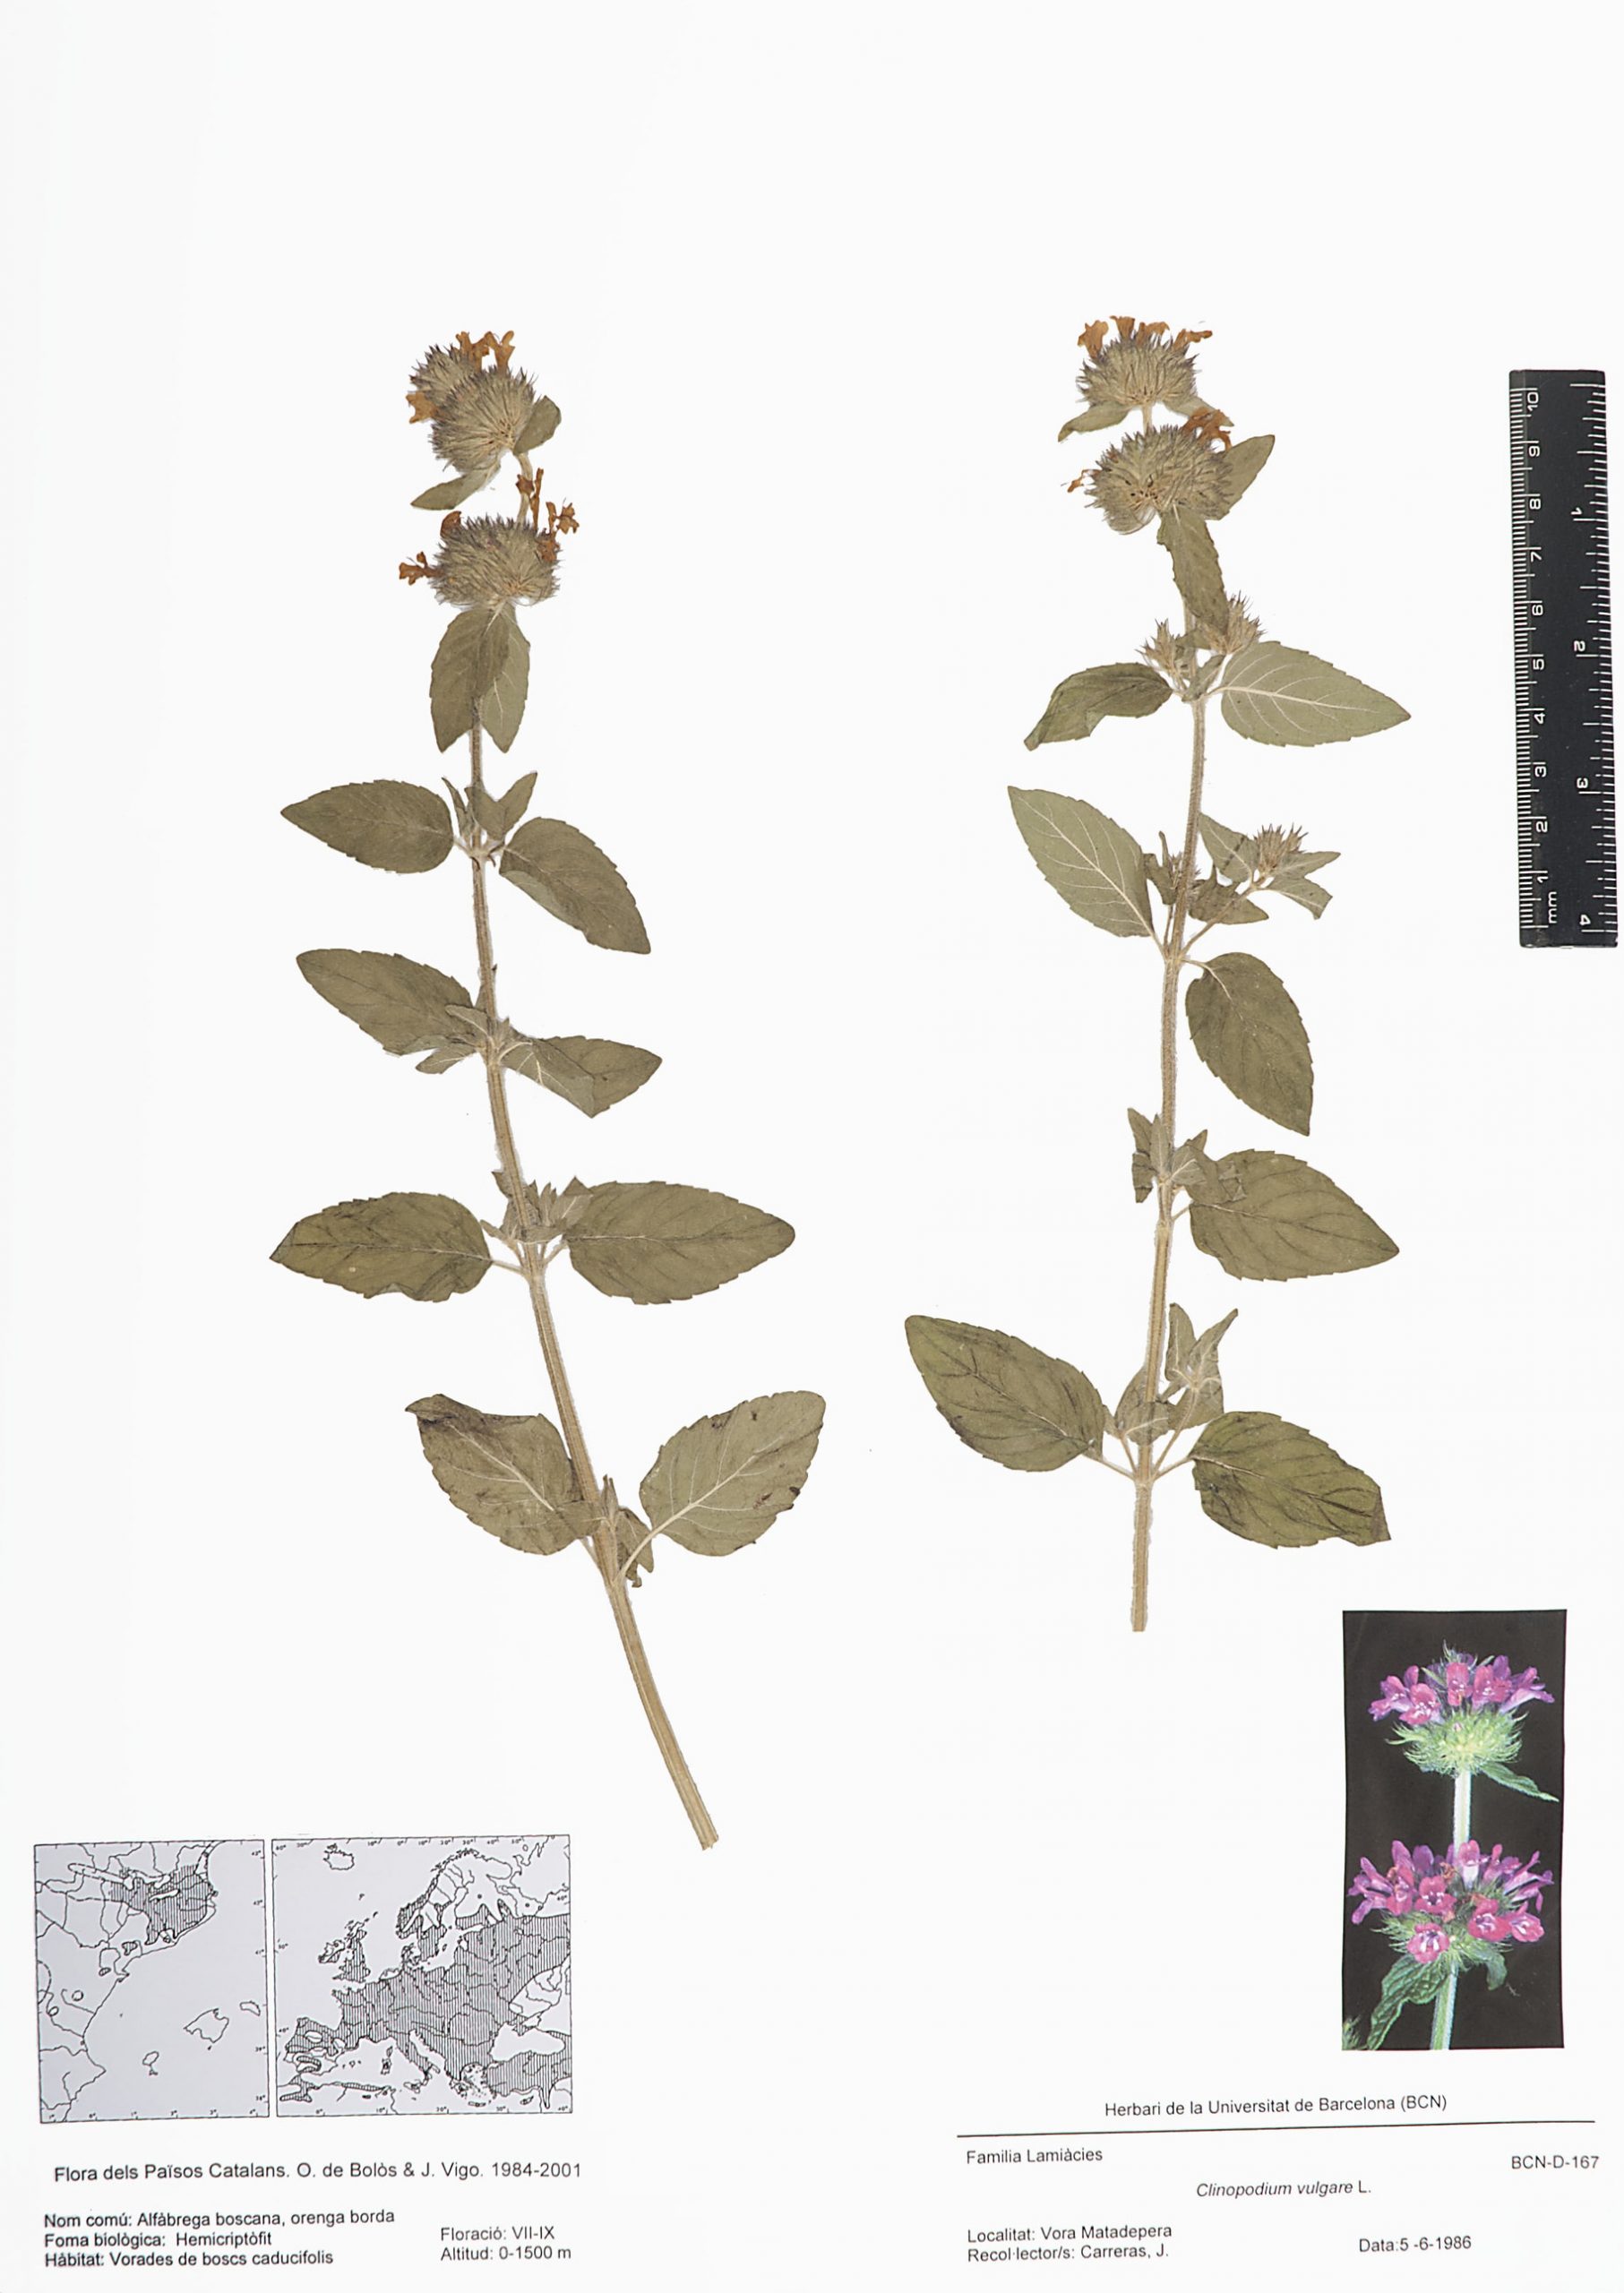 Clinopodium vulgare L. (Alfàbrega boscana, orenga borda)